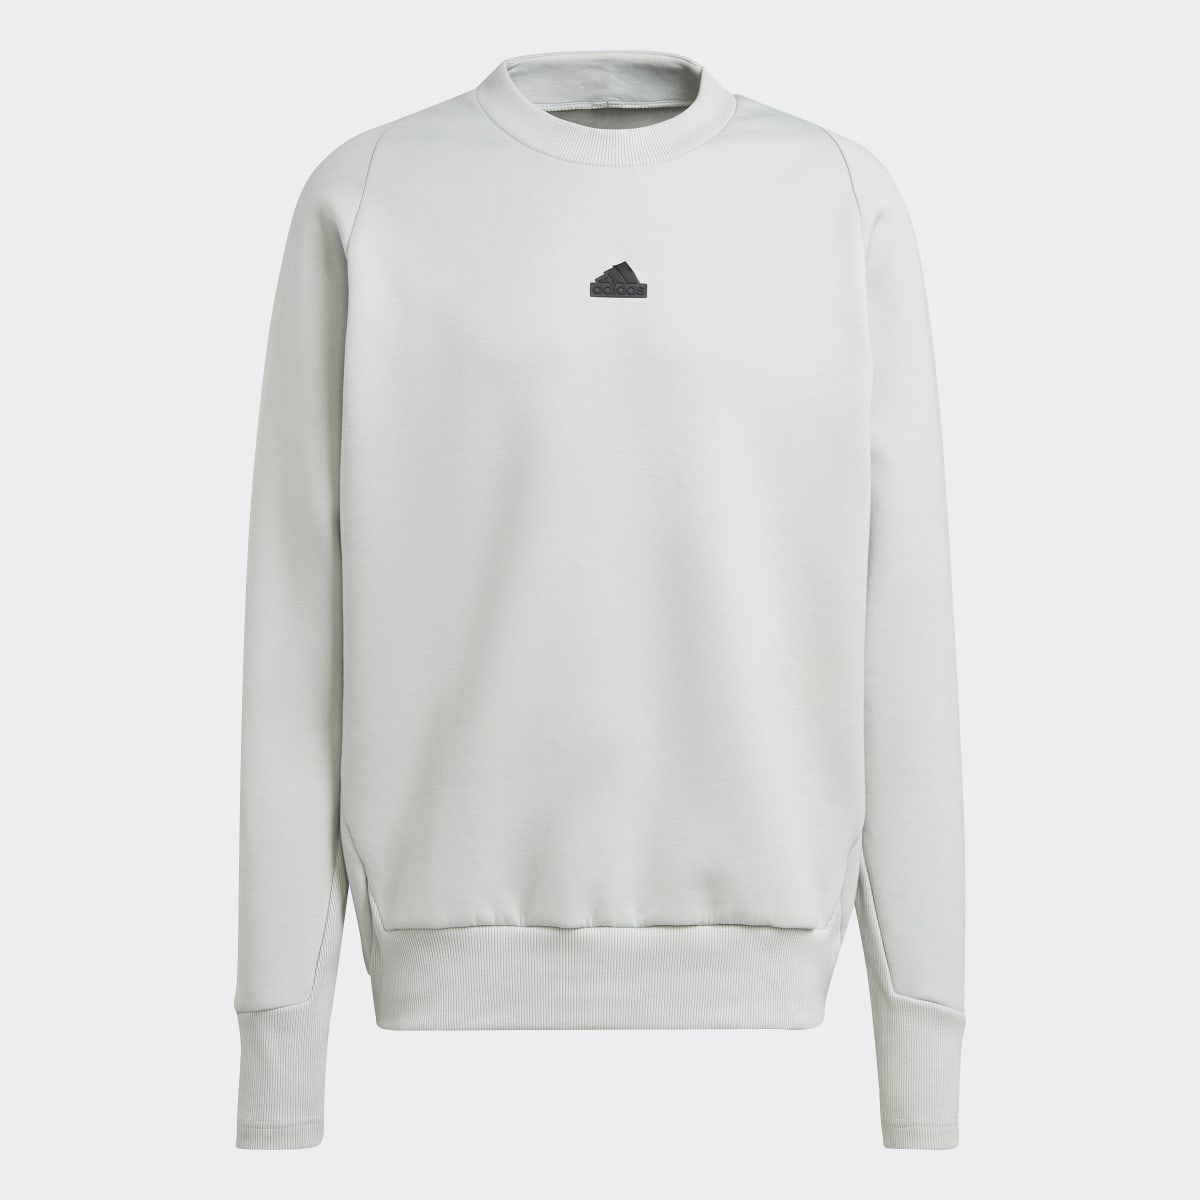 Adidas Z.N.E. Premium Sweatshirt. 5